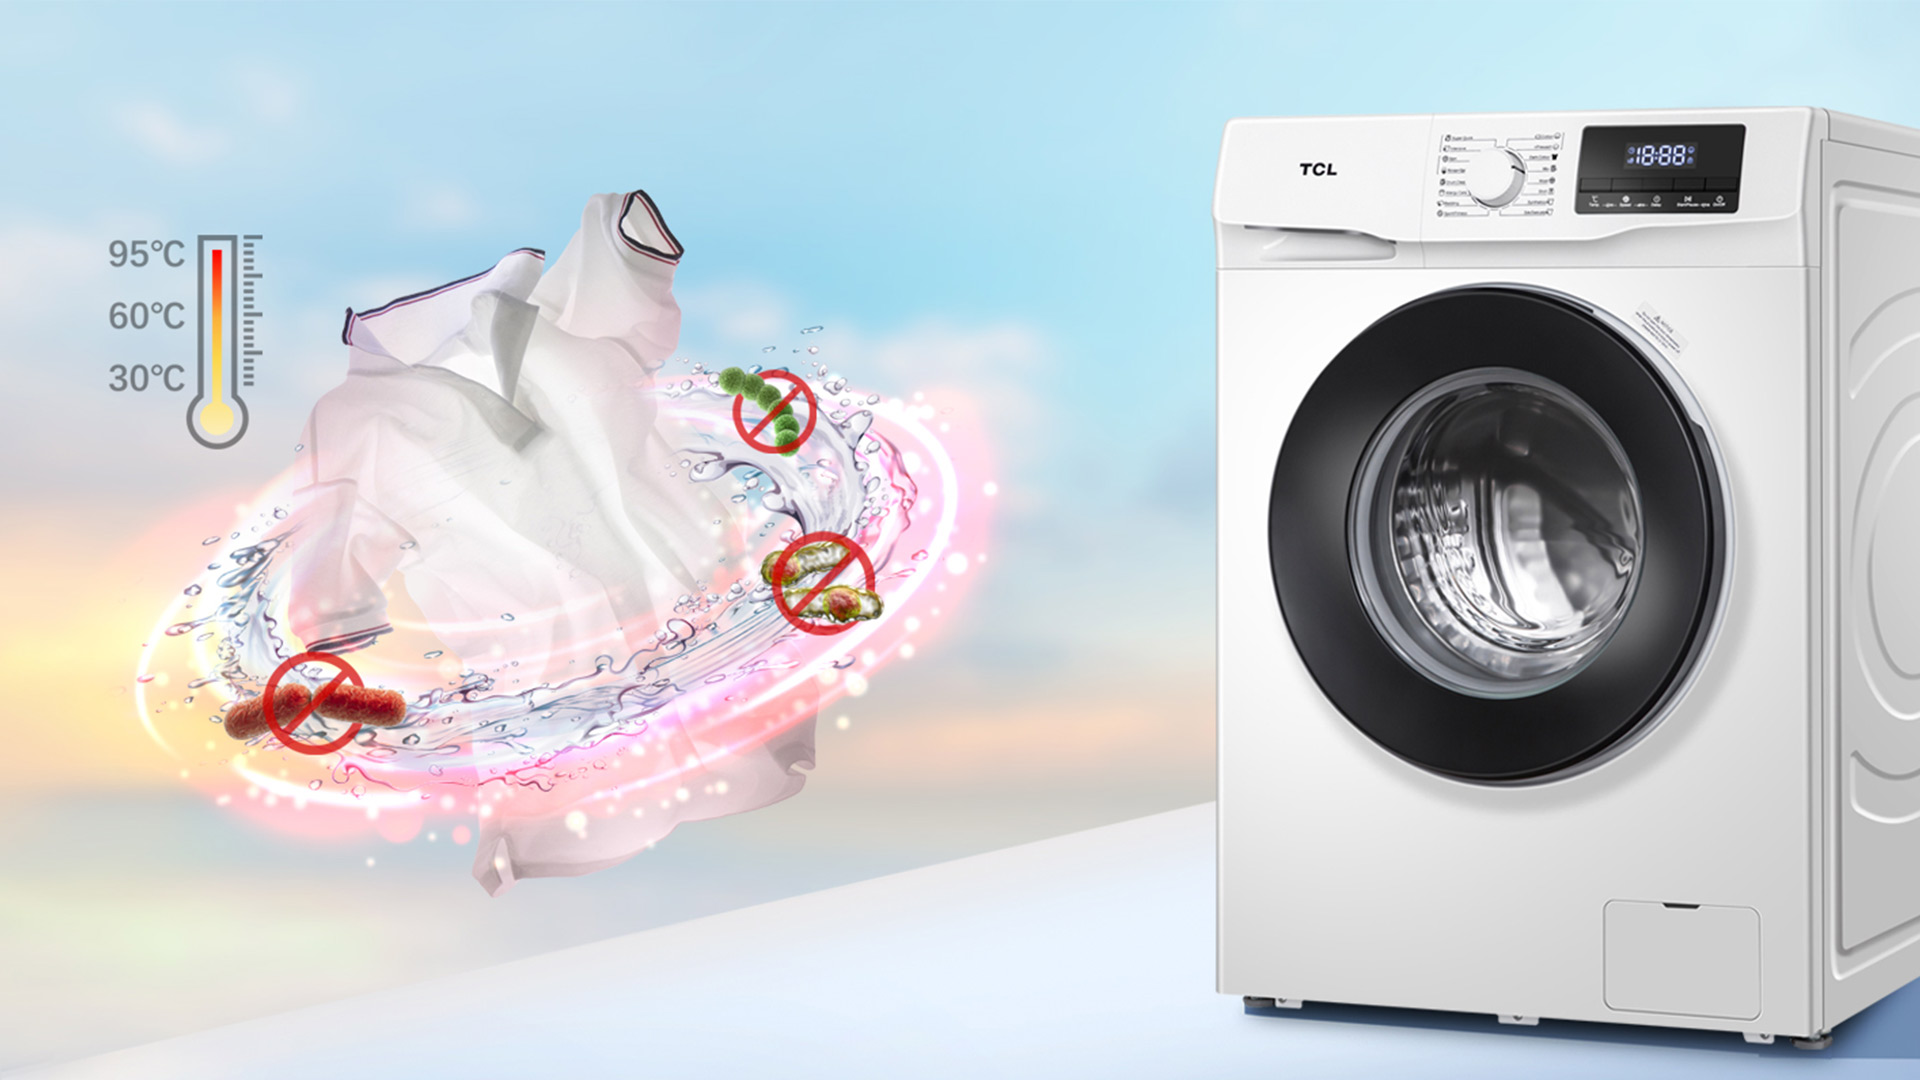 สิ่งที่คุณควรรู้ก่อนซื้อ เครื่องซักผ้าฝาหน้า หรือ เครื่องซักผ้าฝาบน